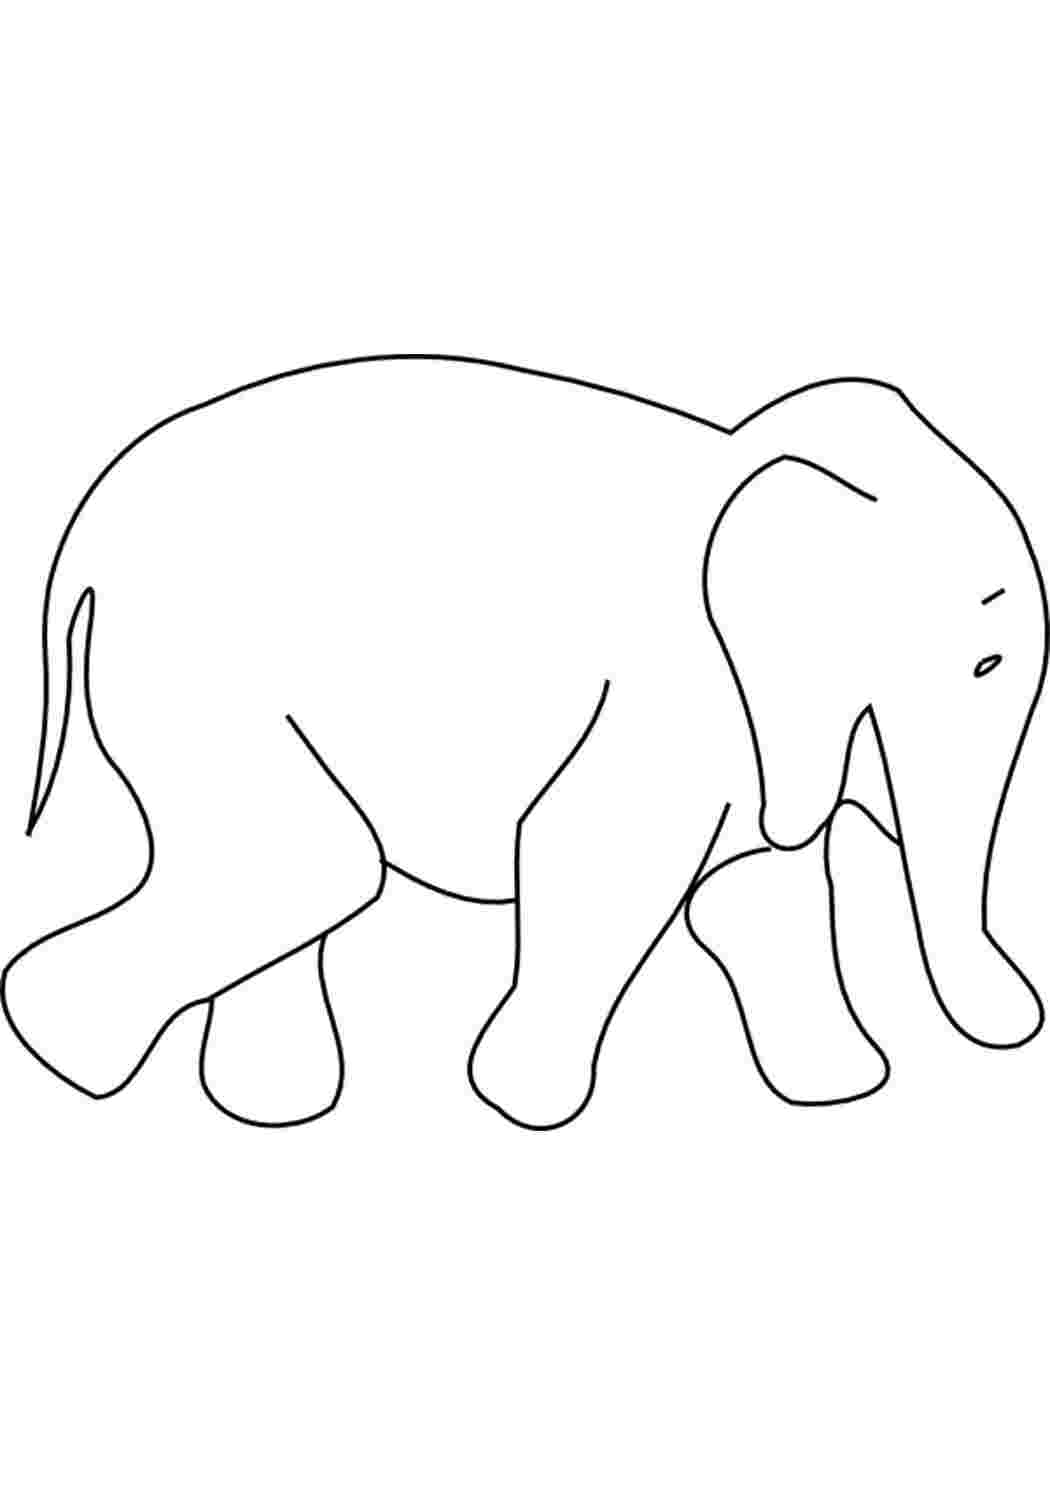 Раскраски слон контур, животные трафарет для вырезания из бумаги Раскраски животные шаблоны 